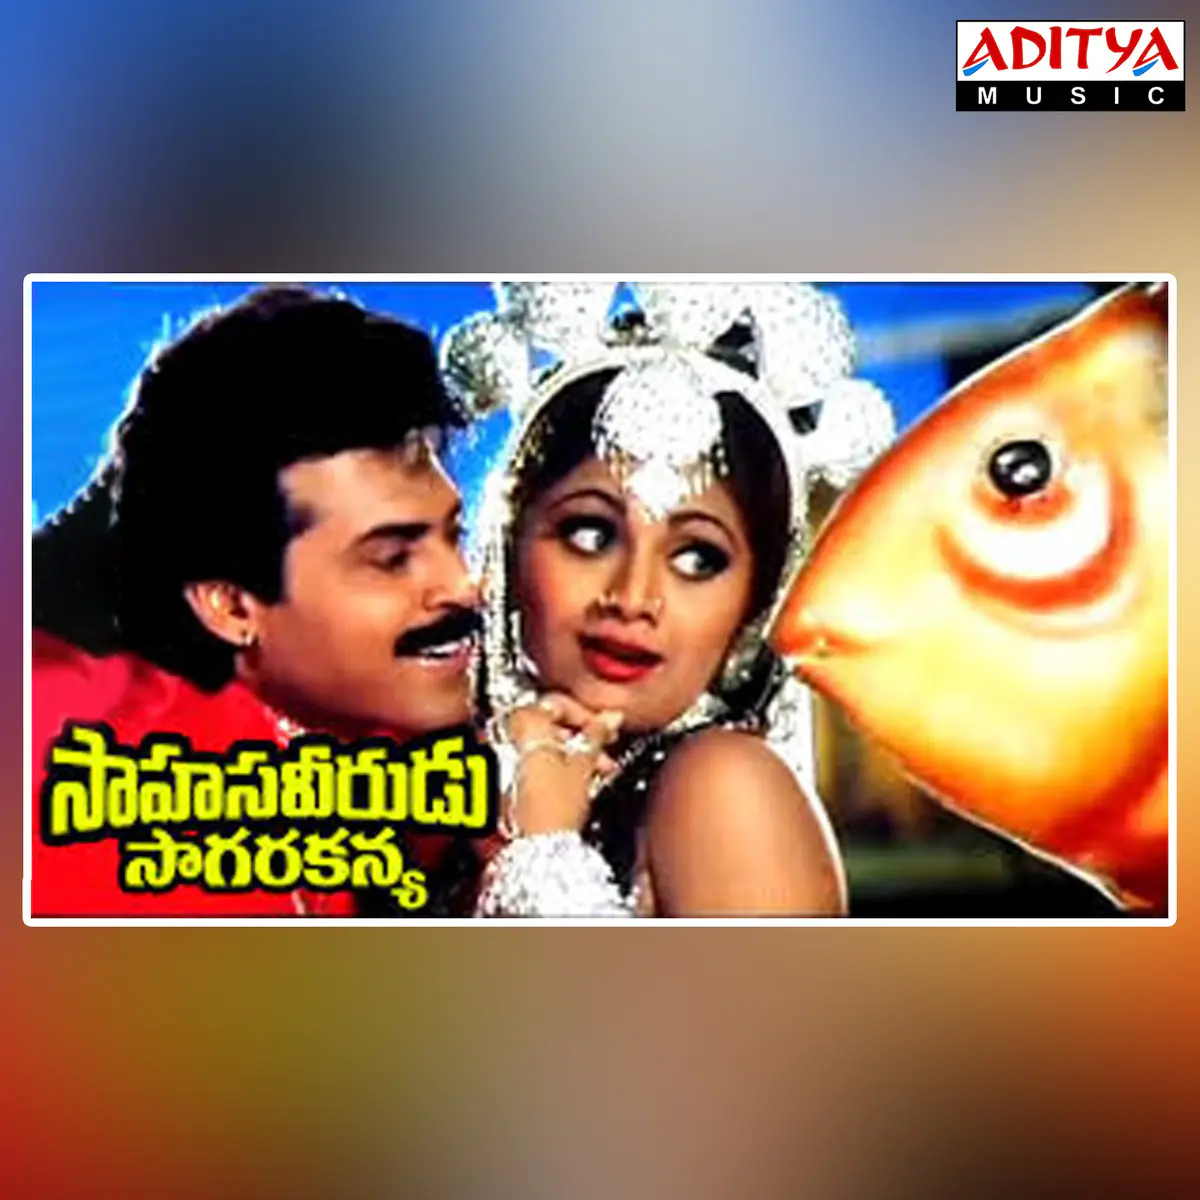 Sahasa Veerudu Sagara Kanya Songs Download Sahasa Veerudu Sagara Kanya Mp3 Telugu Songs Online Free On Gaana Com